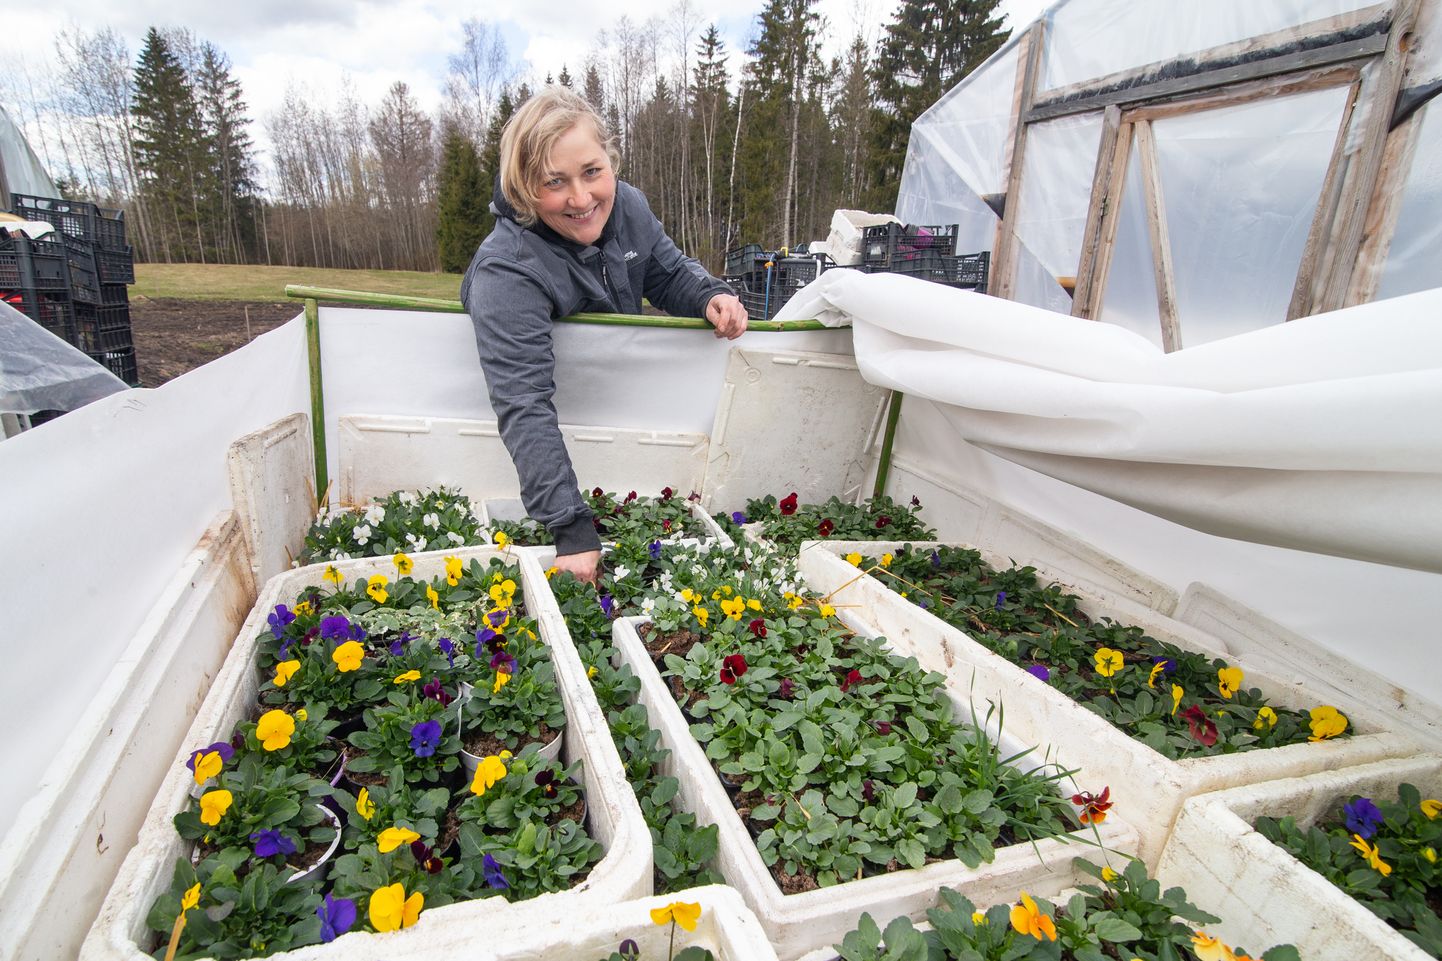 "Я как знала, что украинские цвета в этом году будут важны", - нынче Ыннела Рейвардт посадила много фиалок рогатых с синими и желтыми цветками.